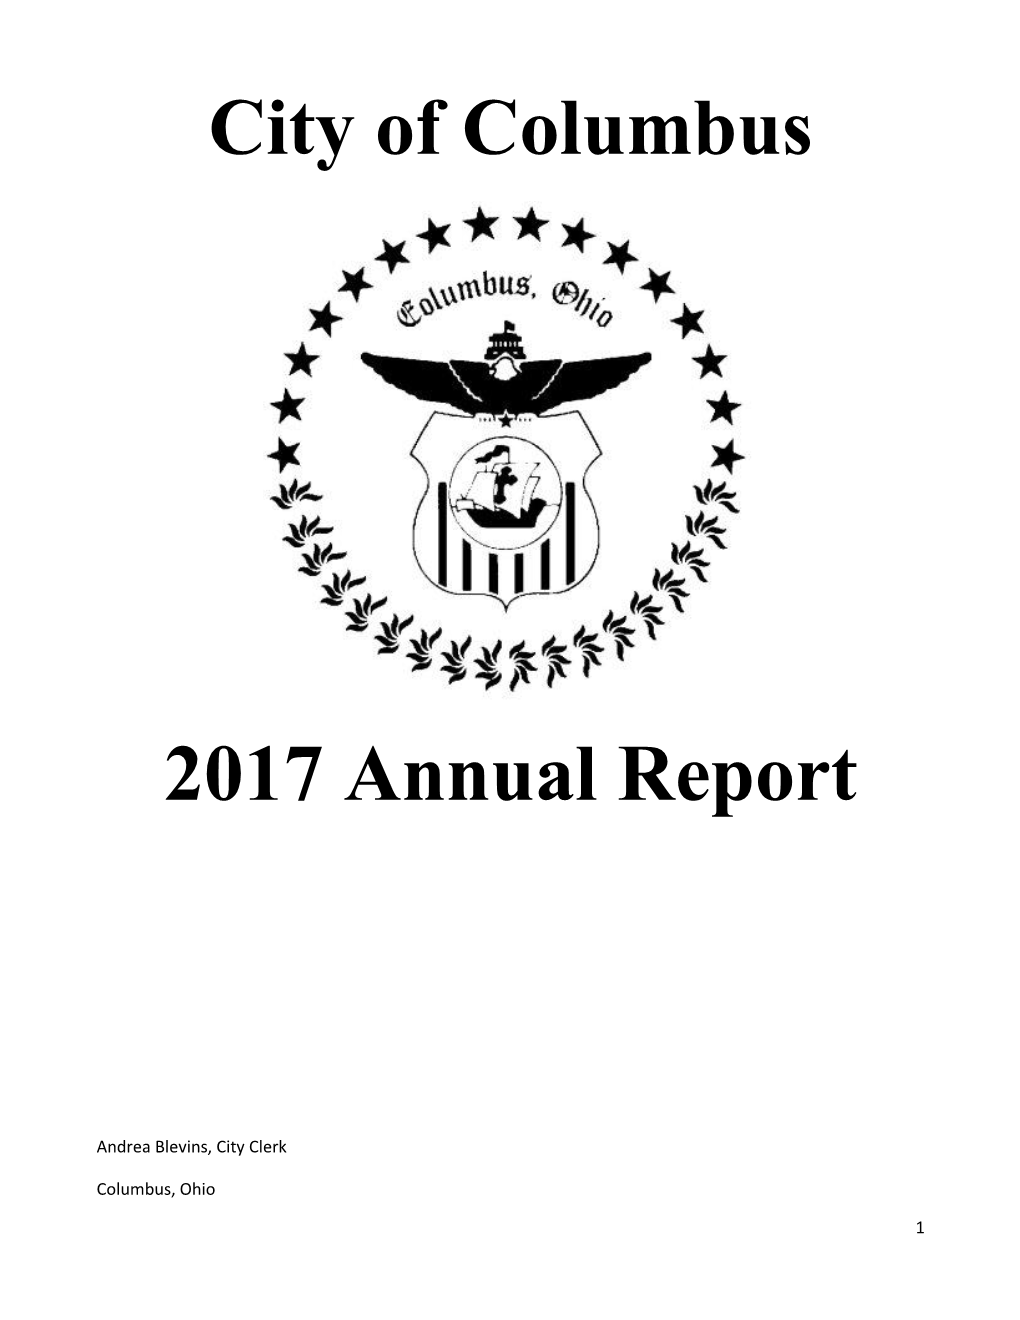 City of Columbus 2017 Annual Report